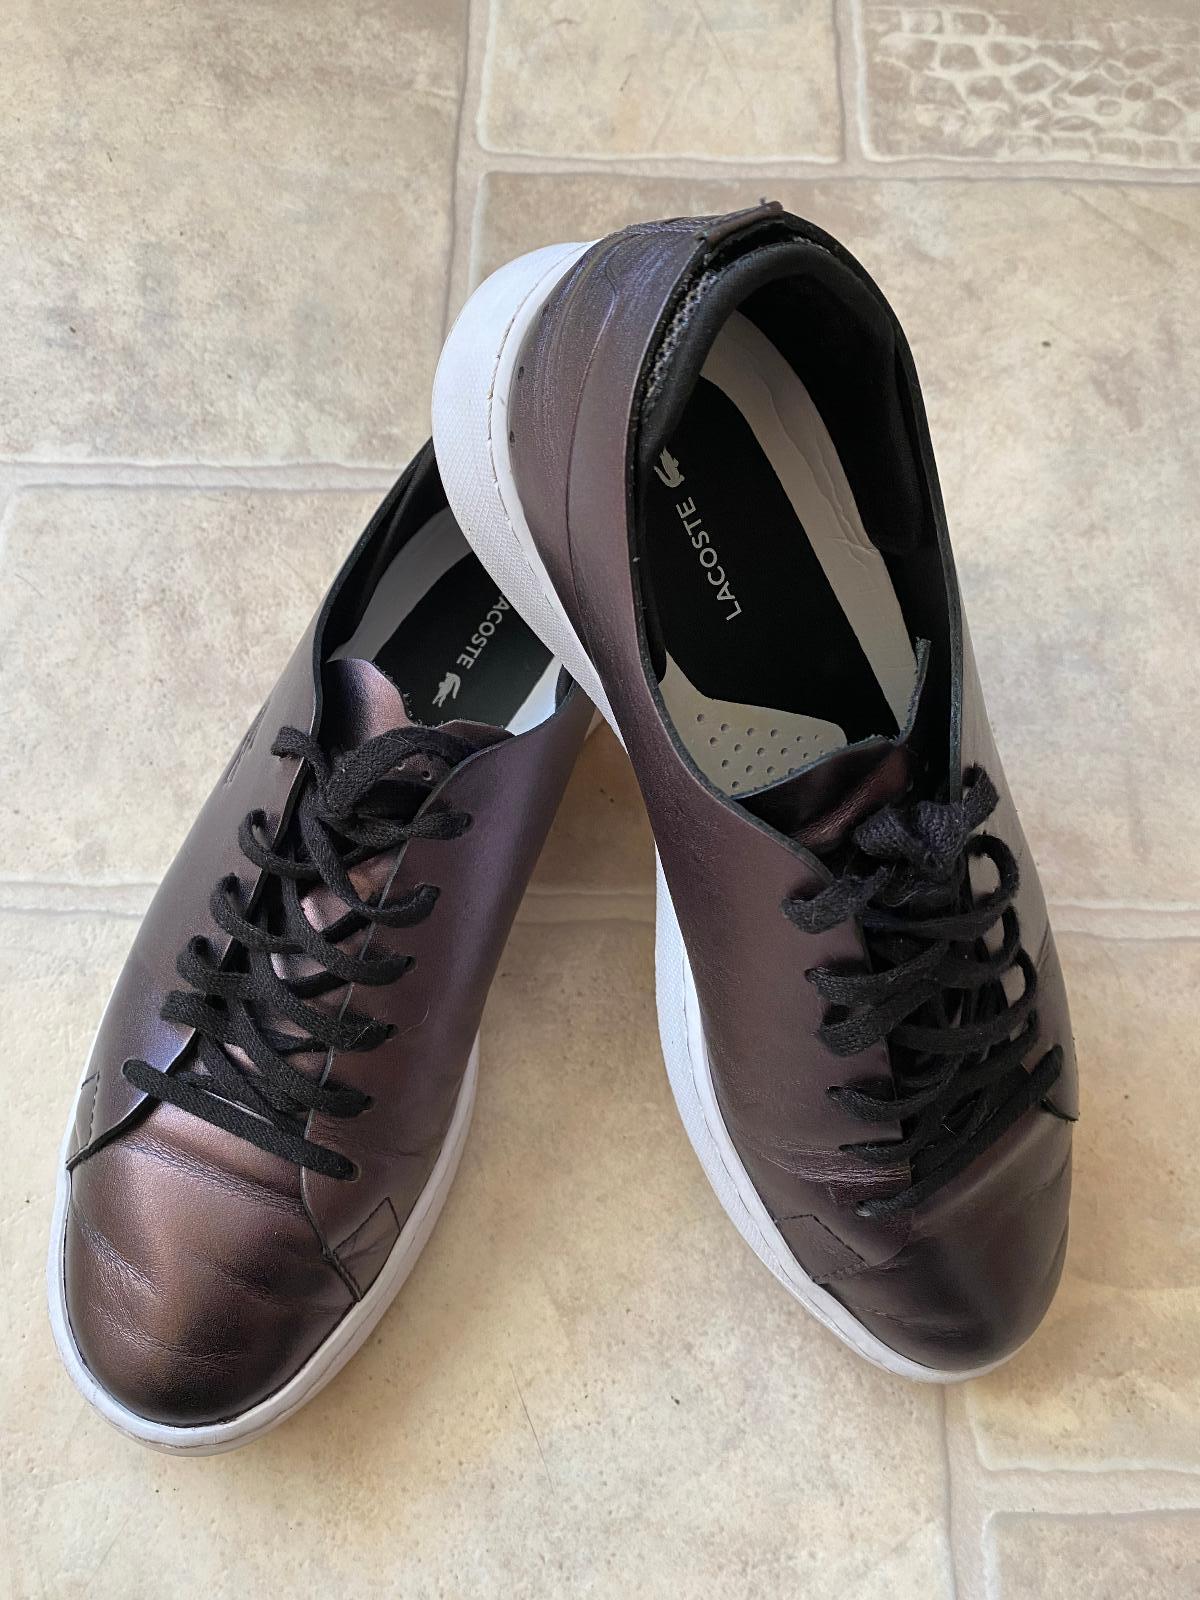 Luxusní tenisky Lacoste vel. 39 - Oblečení, obuv a doplňky